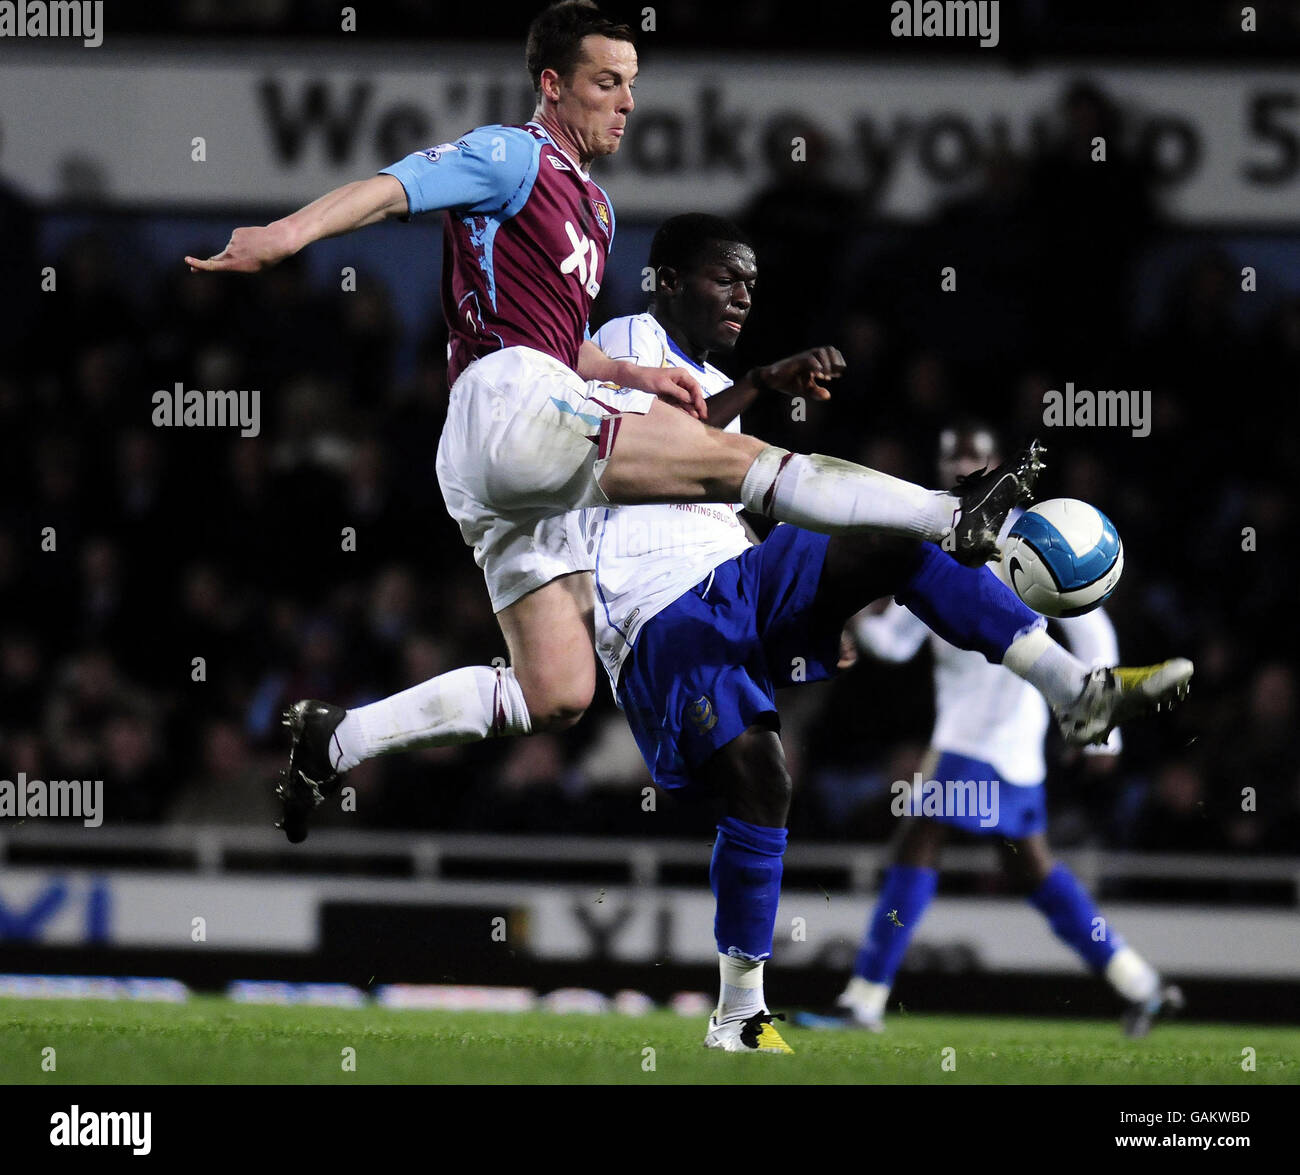 Fútbol - Barclays Premier League - West Ham United v Portsmouth - Upton Park Foto de stock